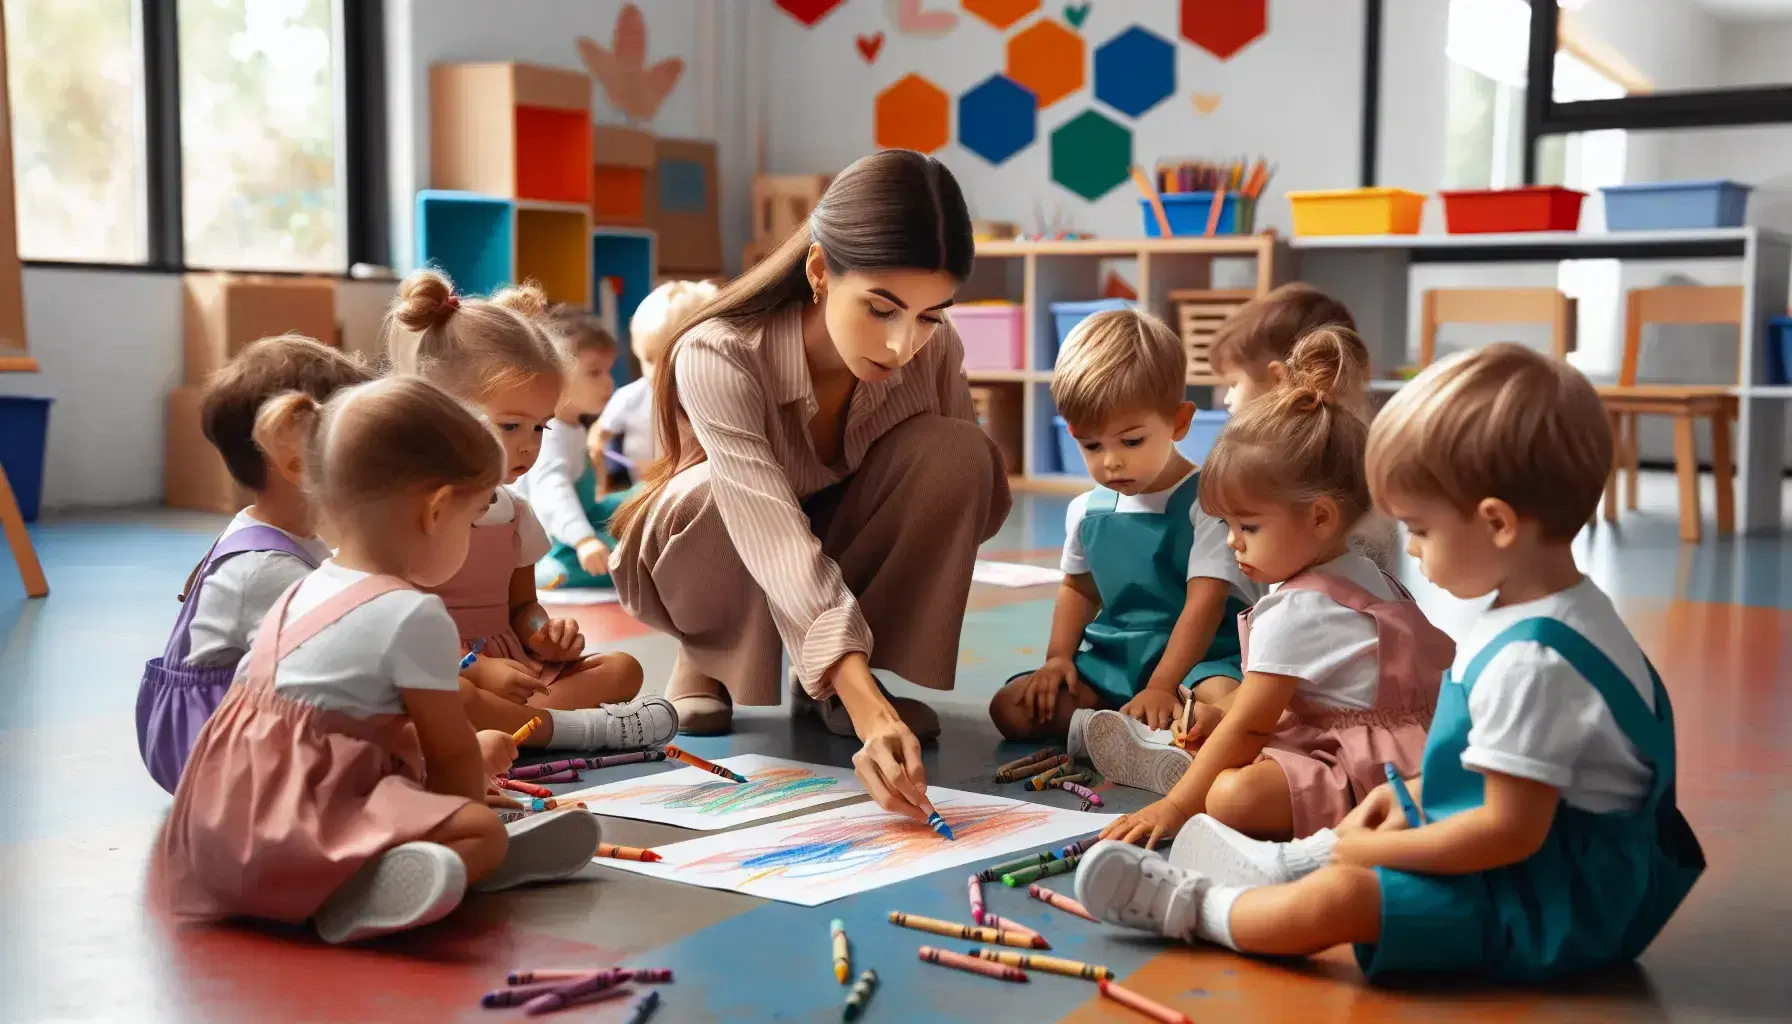 Niños pequeños concentrados en dibujar y pintar con crayones en clase, con maestra interactuando y aula colorida de fondo.